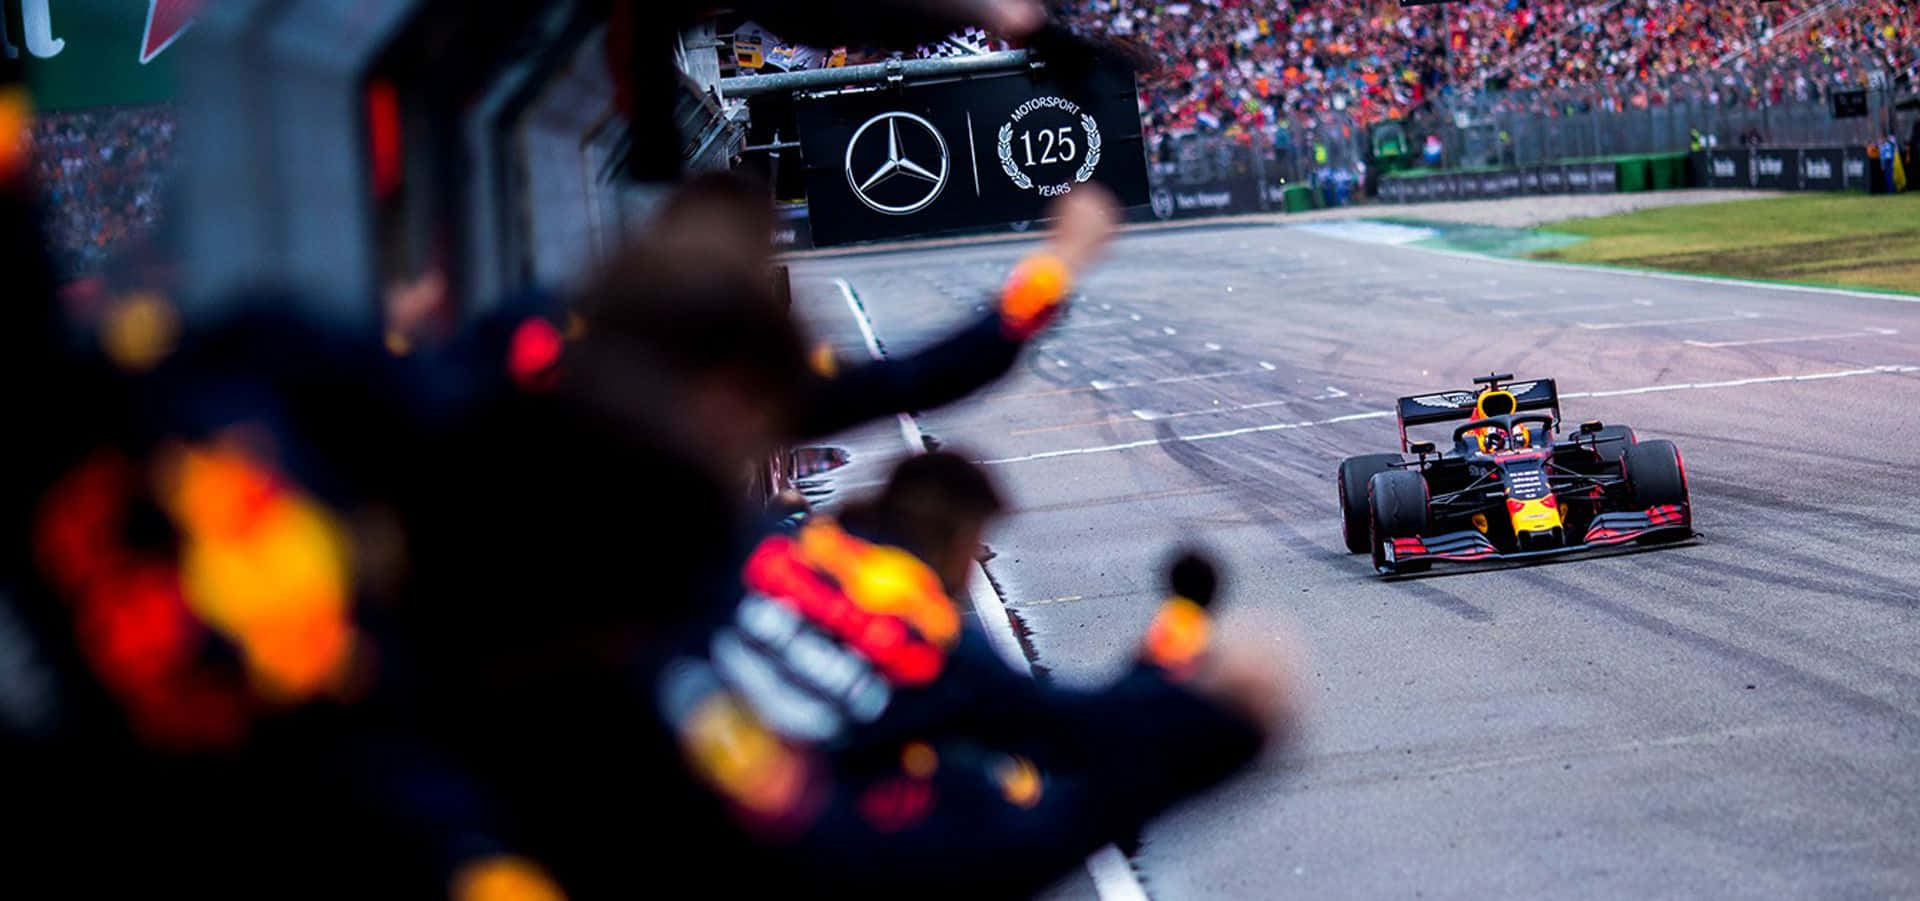 Max Verstappen racing in his Red Bull Formula 1 car